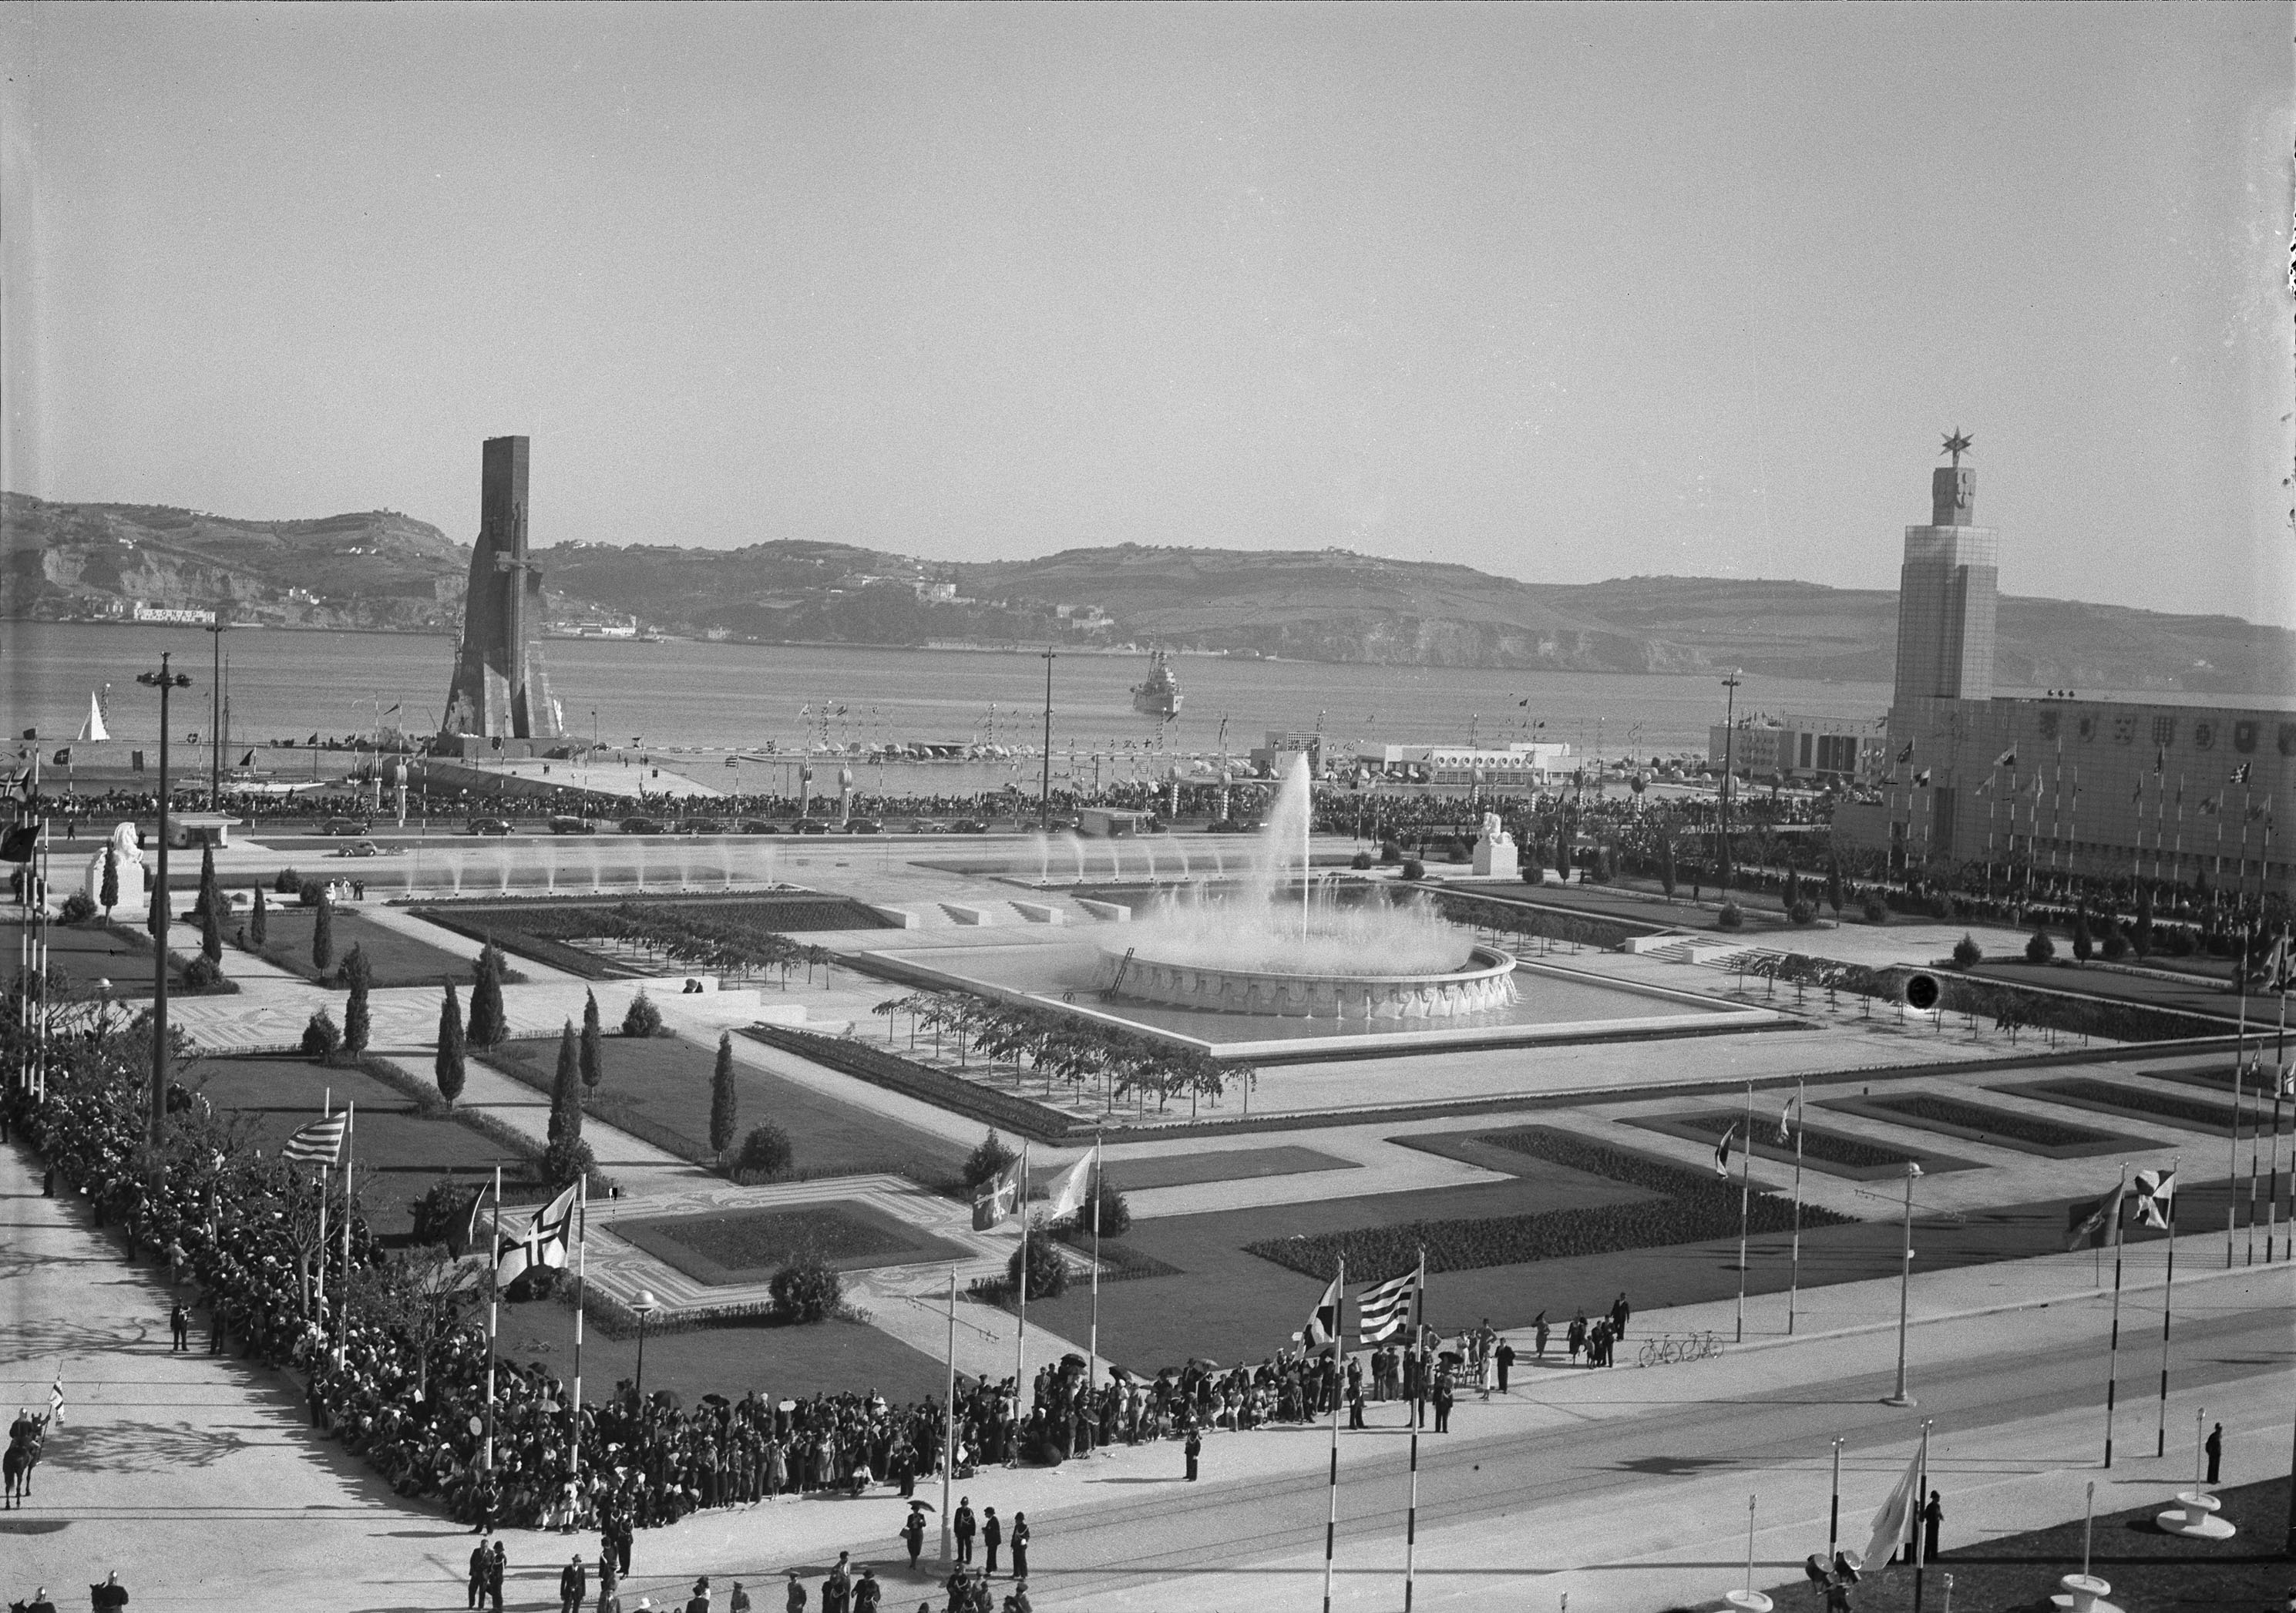 Exposição do Mundo Português, Lisboa, 1940